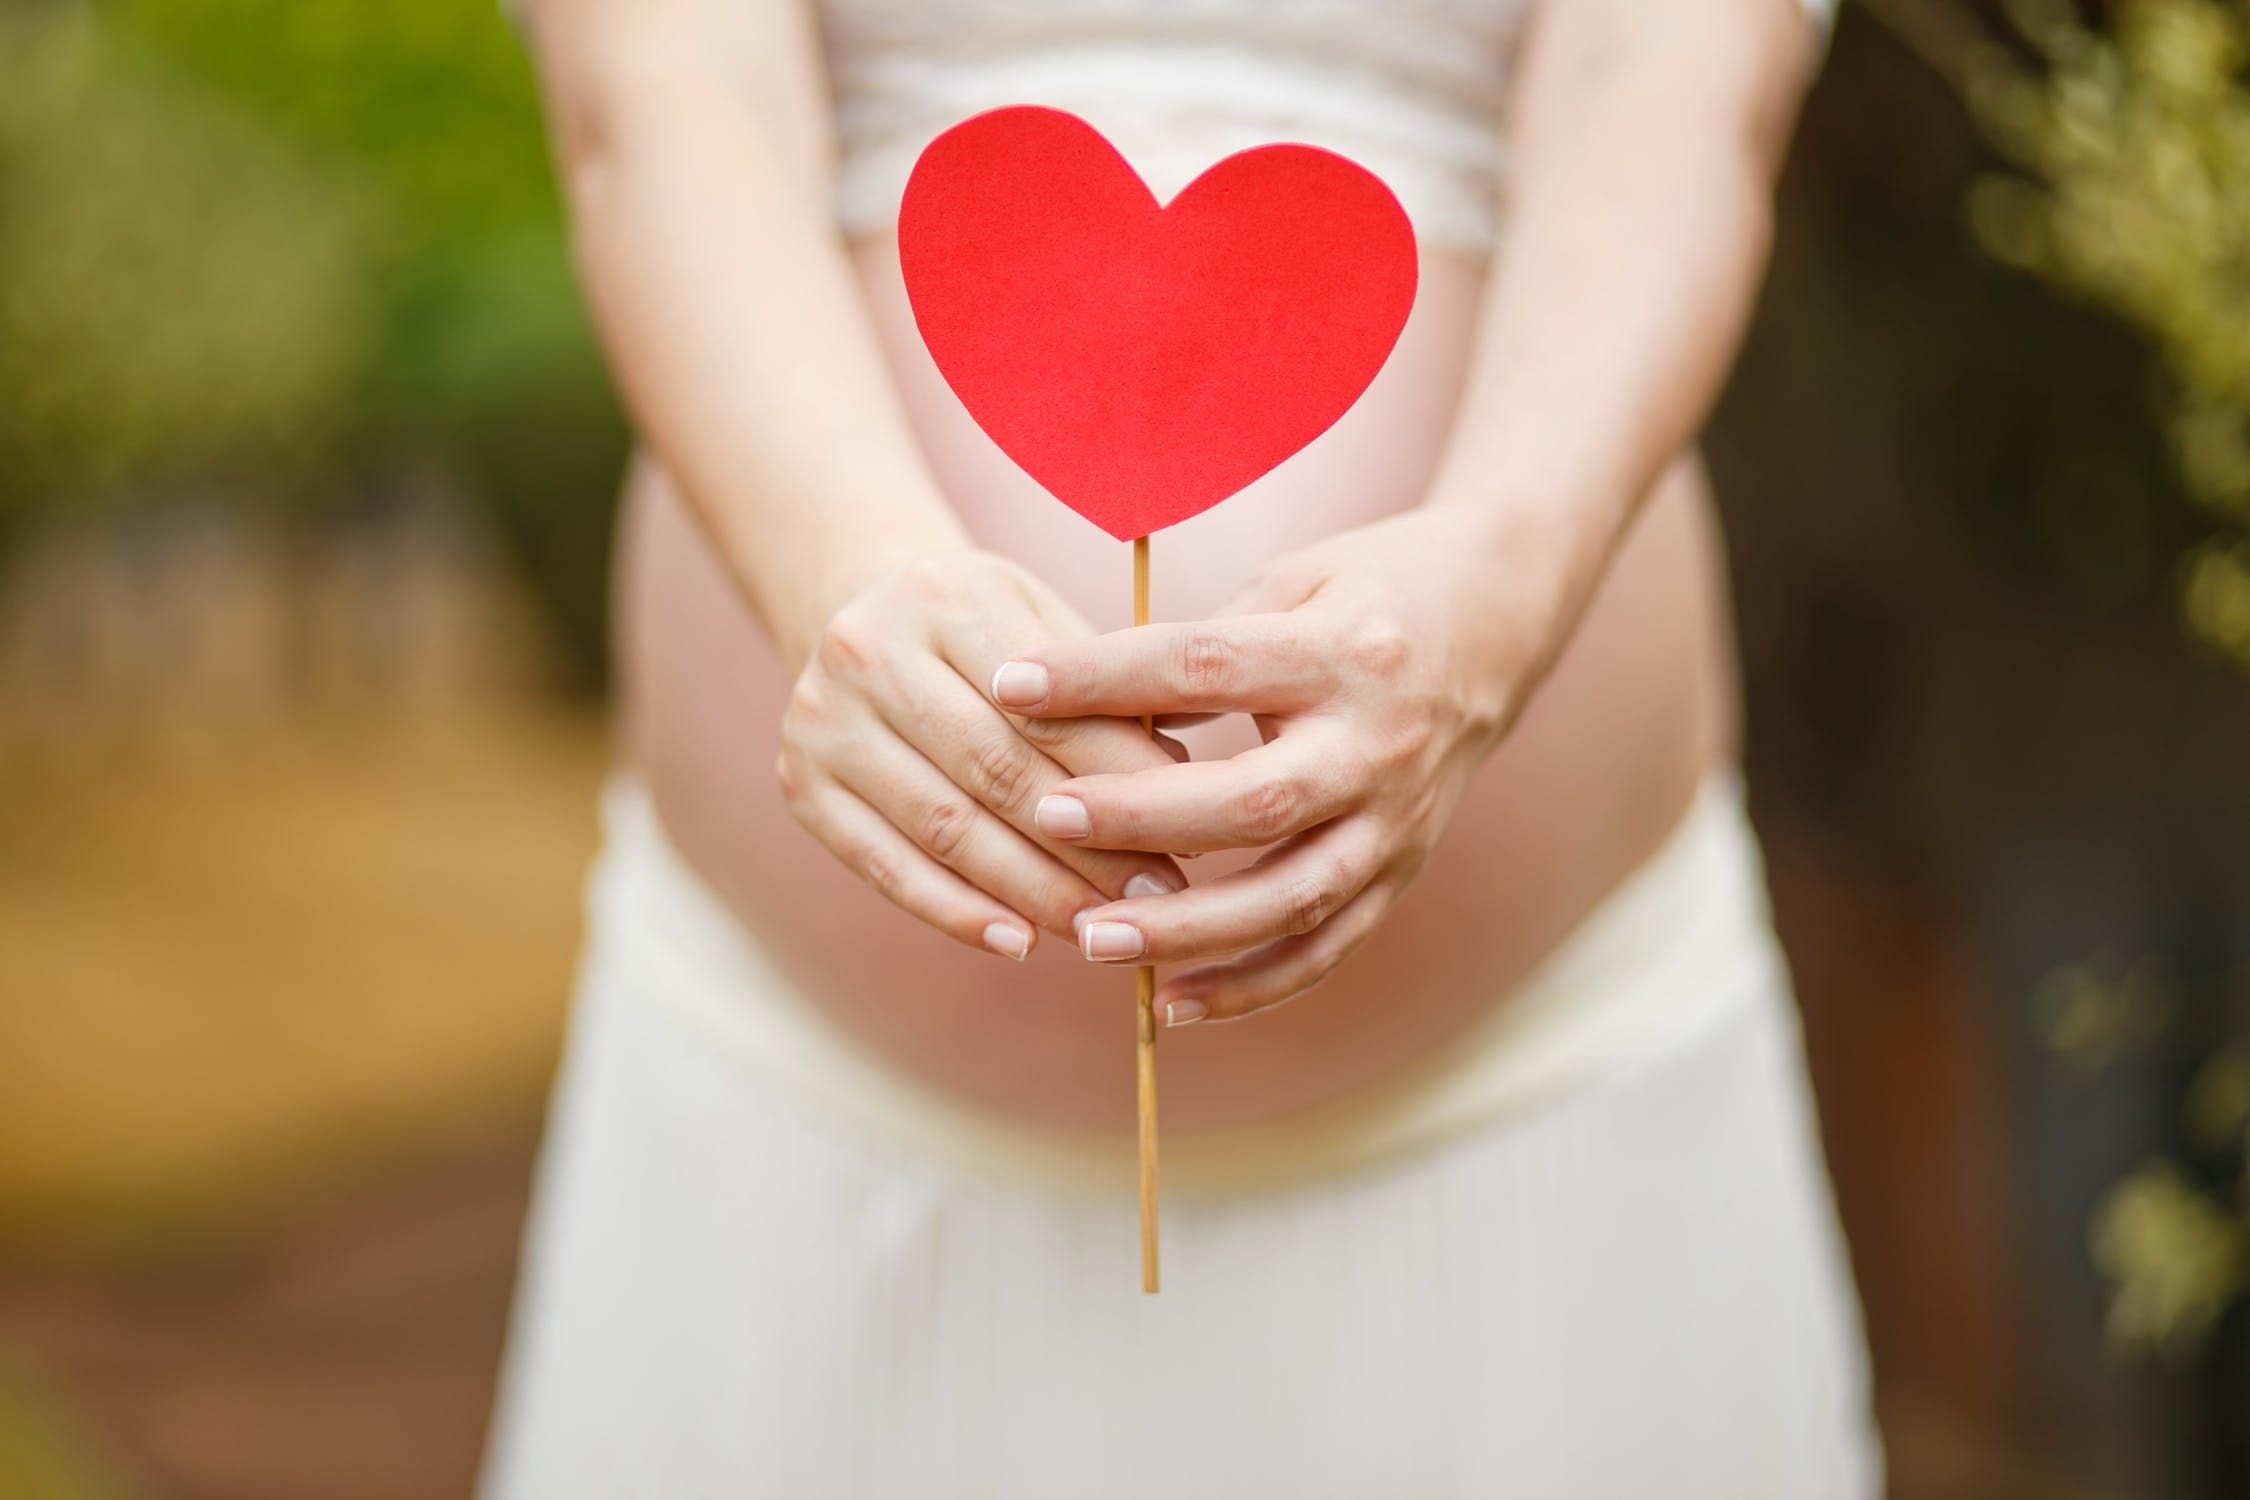 17 žien zdieľa svoje najvtipnejšie a najnechutnejšie tehotenské historky